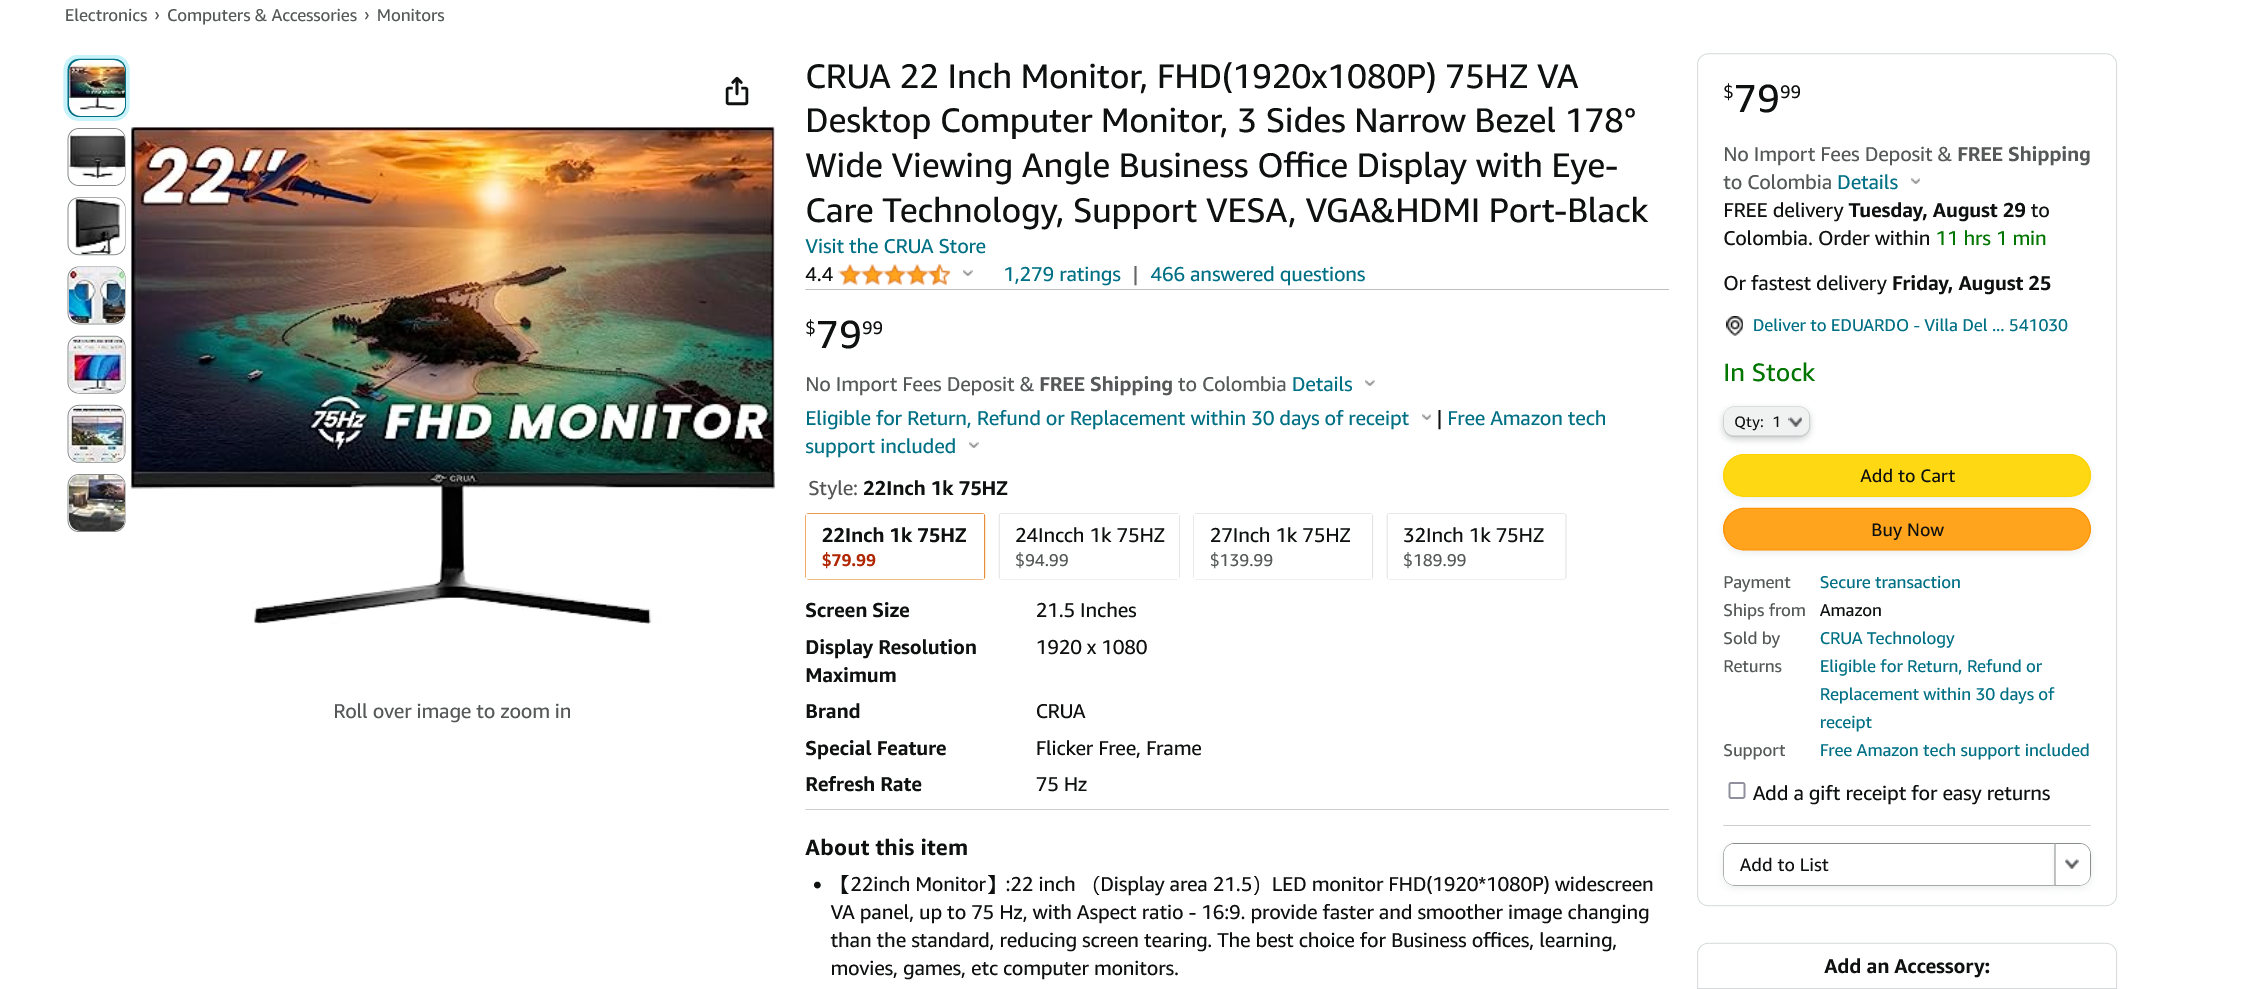 Screenshot 2023-08-11 at 13-59-18 Amazon.com CRUA 22 Inch Monitor FHD(1920x1080P) 75HZ VA Desk...png